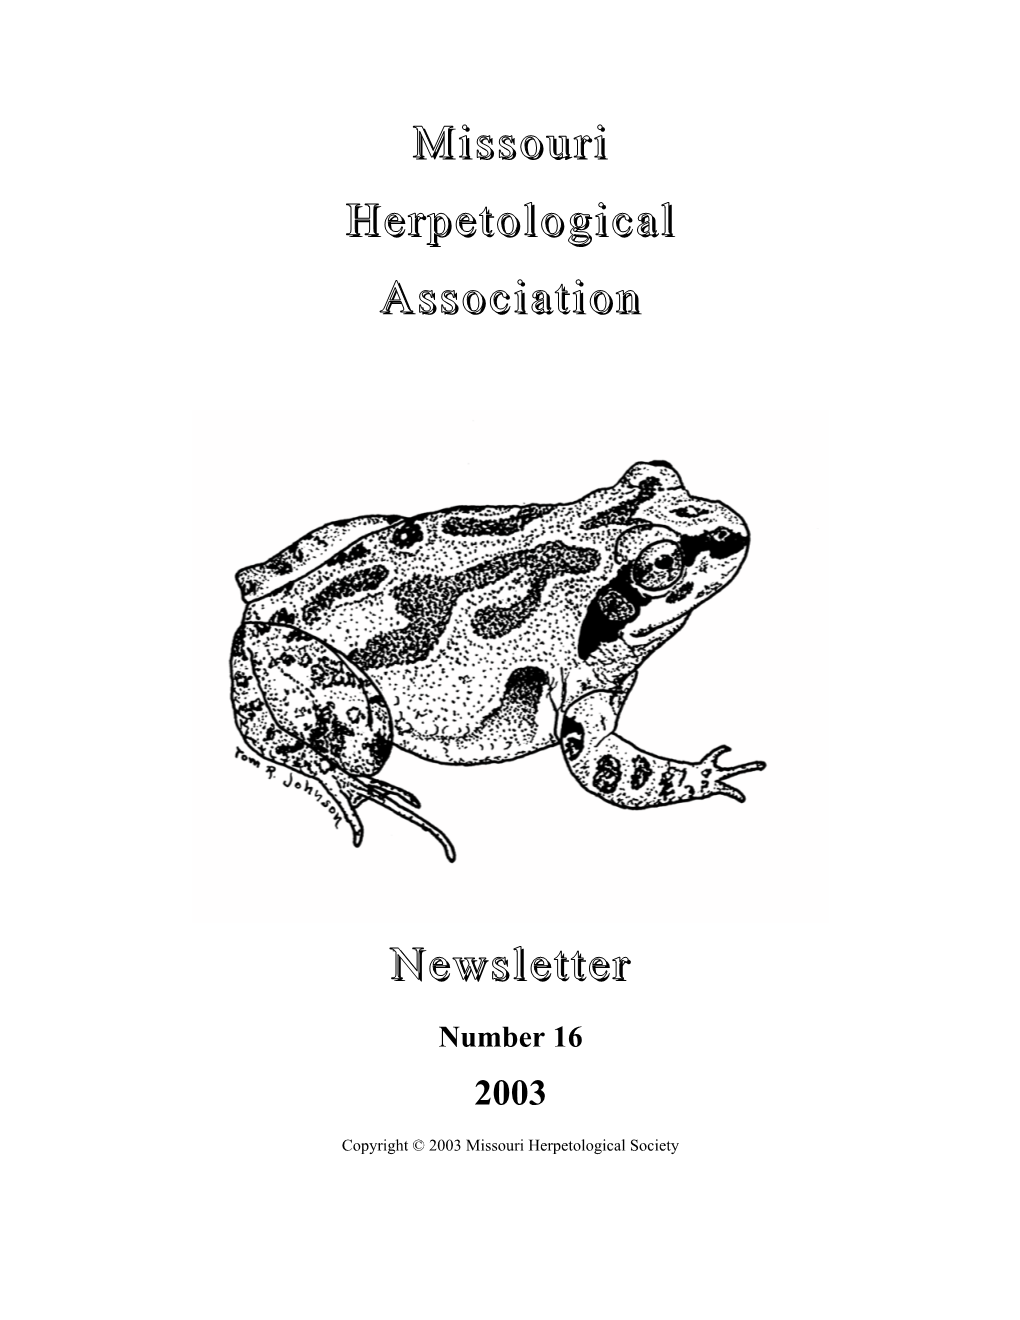 Missouri Herpetological Association Newsletter #16 (2003)